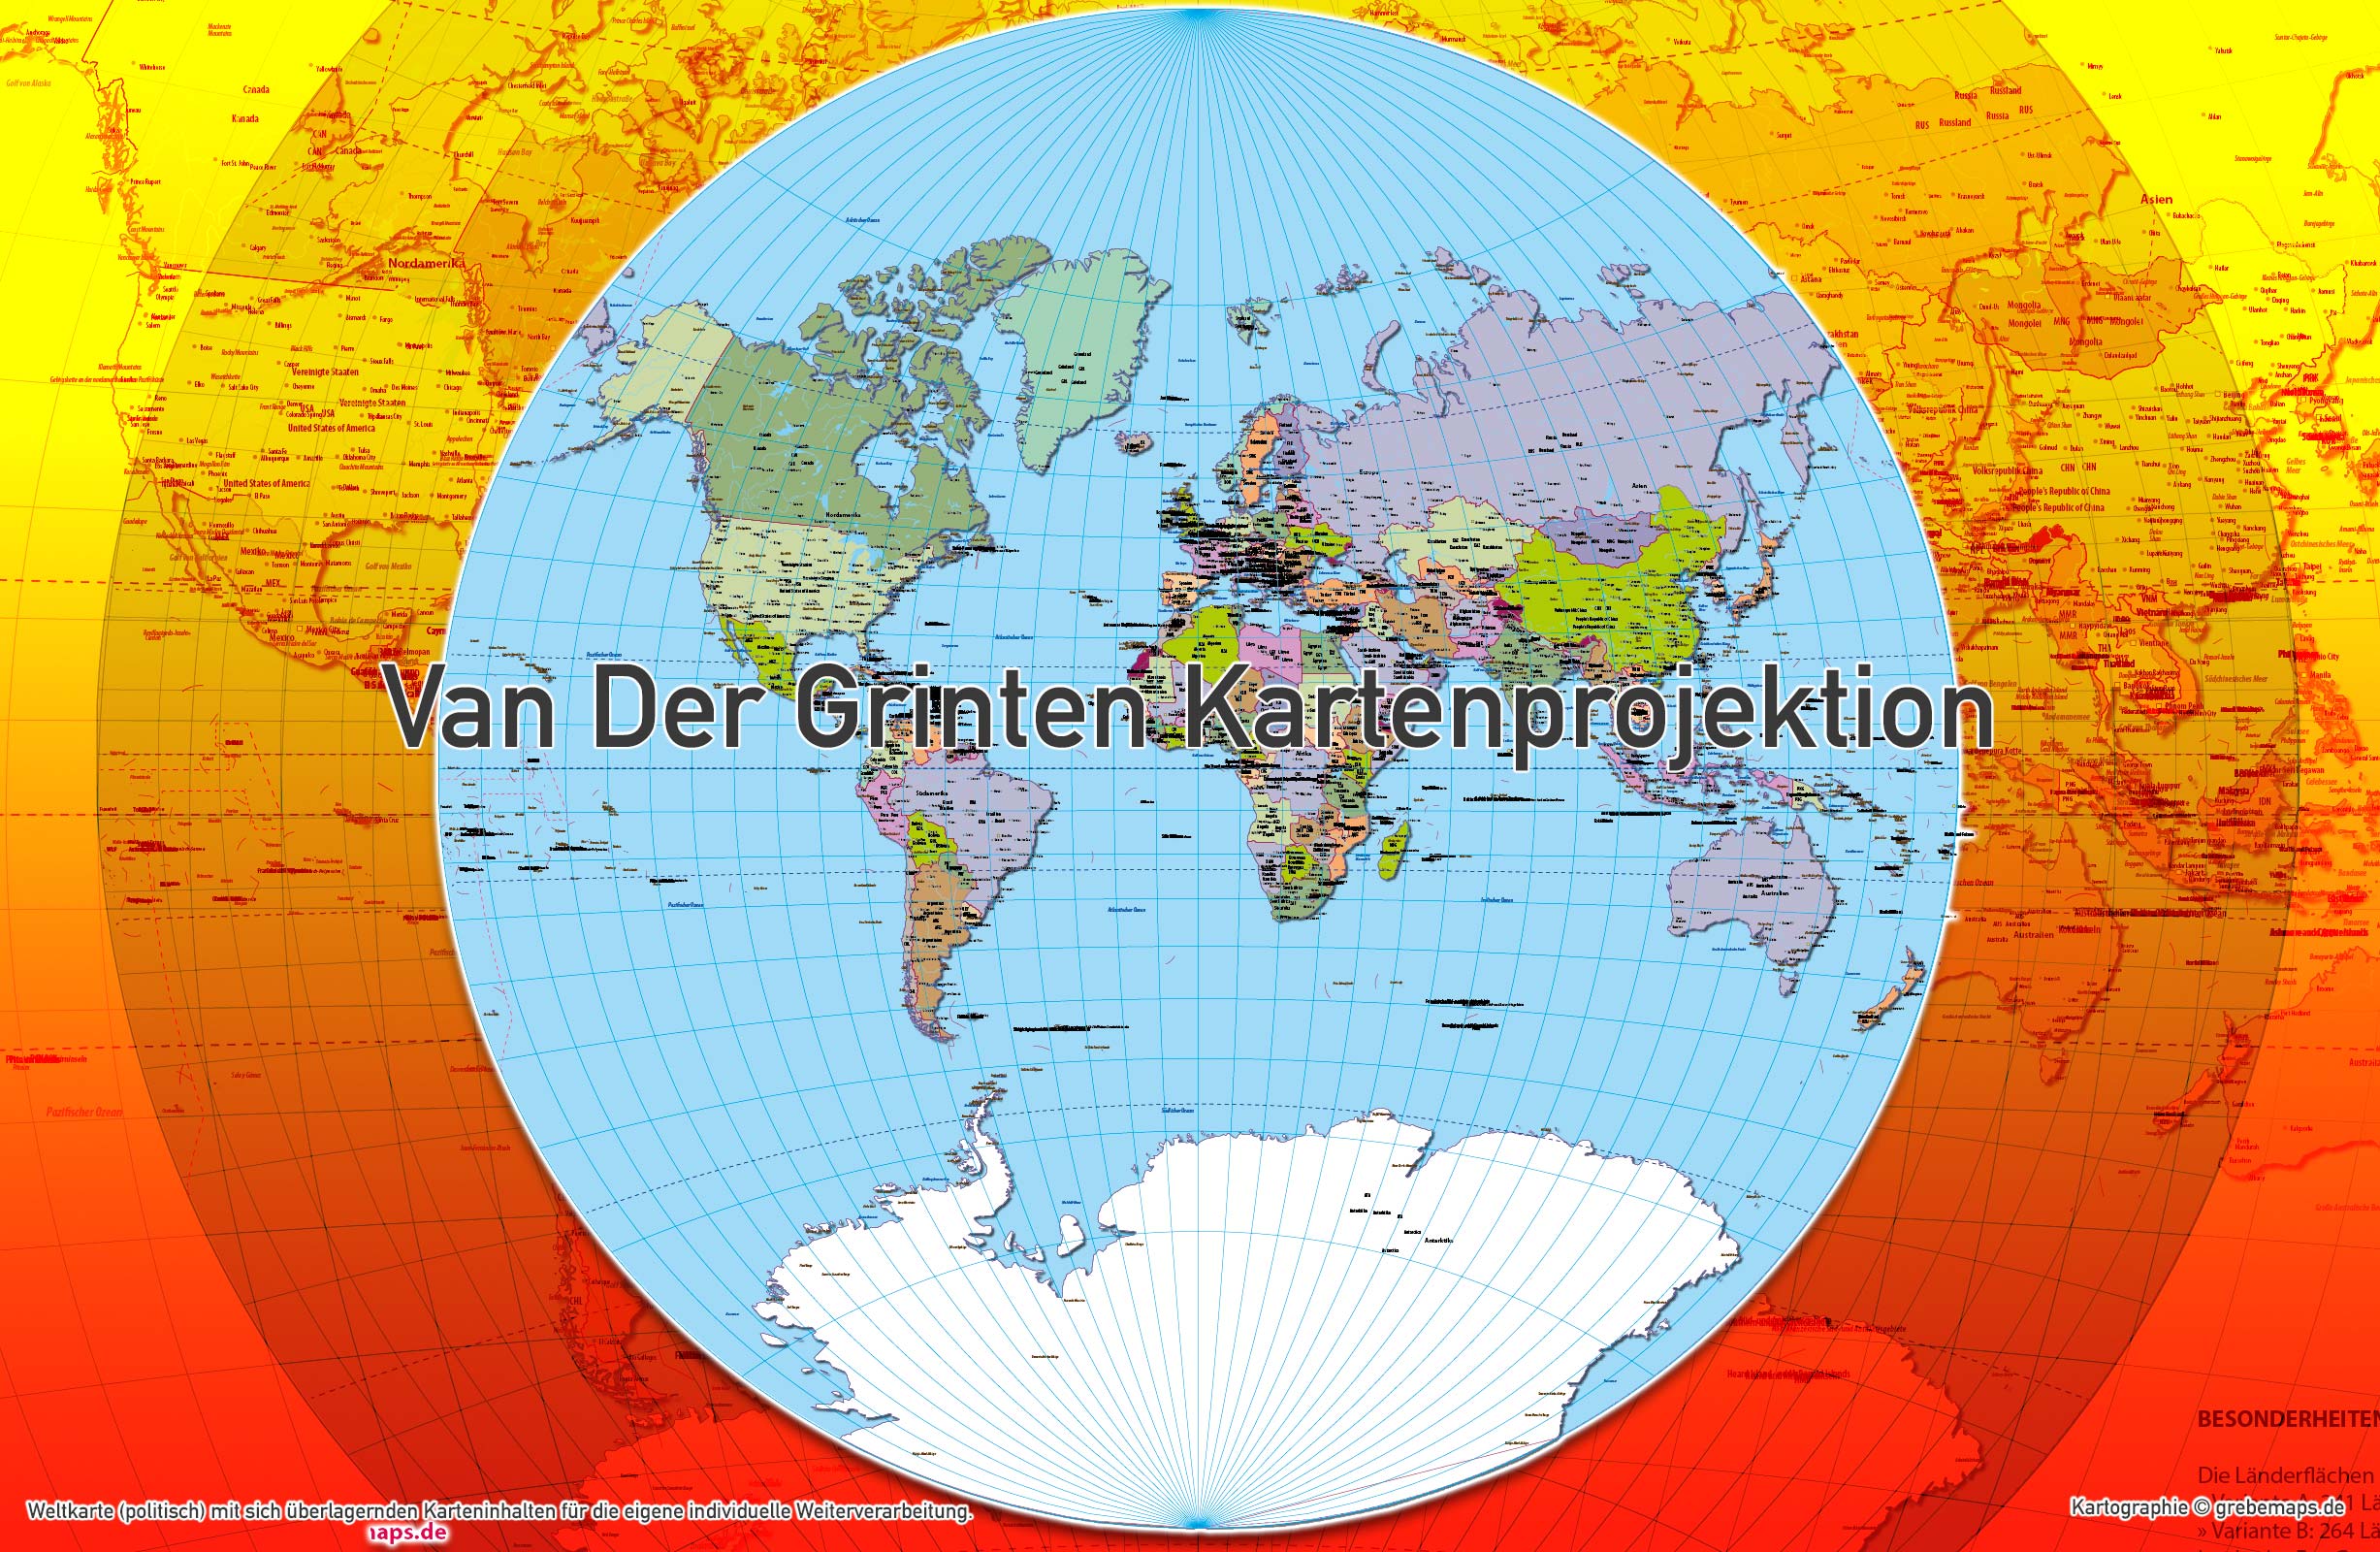 Weltkarte politisch - Van Der Grinten Kartenprojektion - ebenen-separierte editierbare Vektorkarte für Illustrator zum Download, Weltkarte politisch Vektor-Download Illustrator van der Grinten, vector map world van der grinten, Weltkarte bearbeitbar, AI